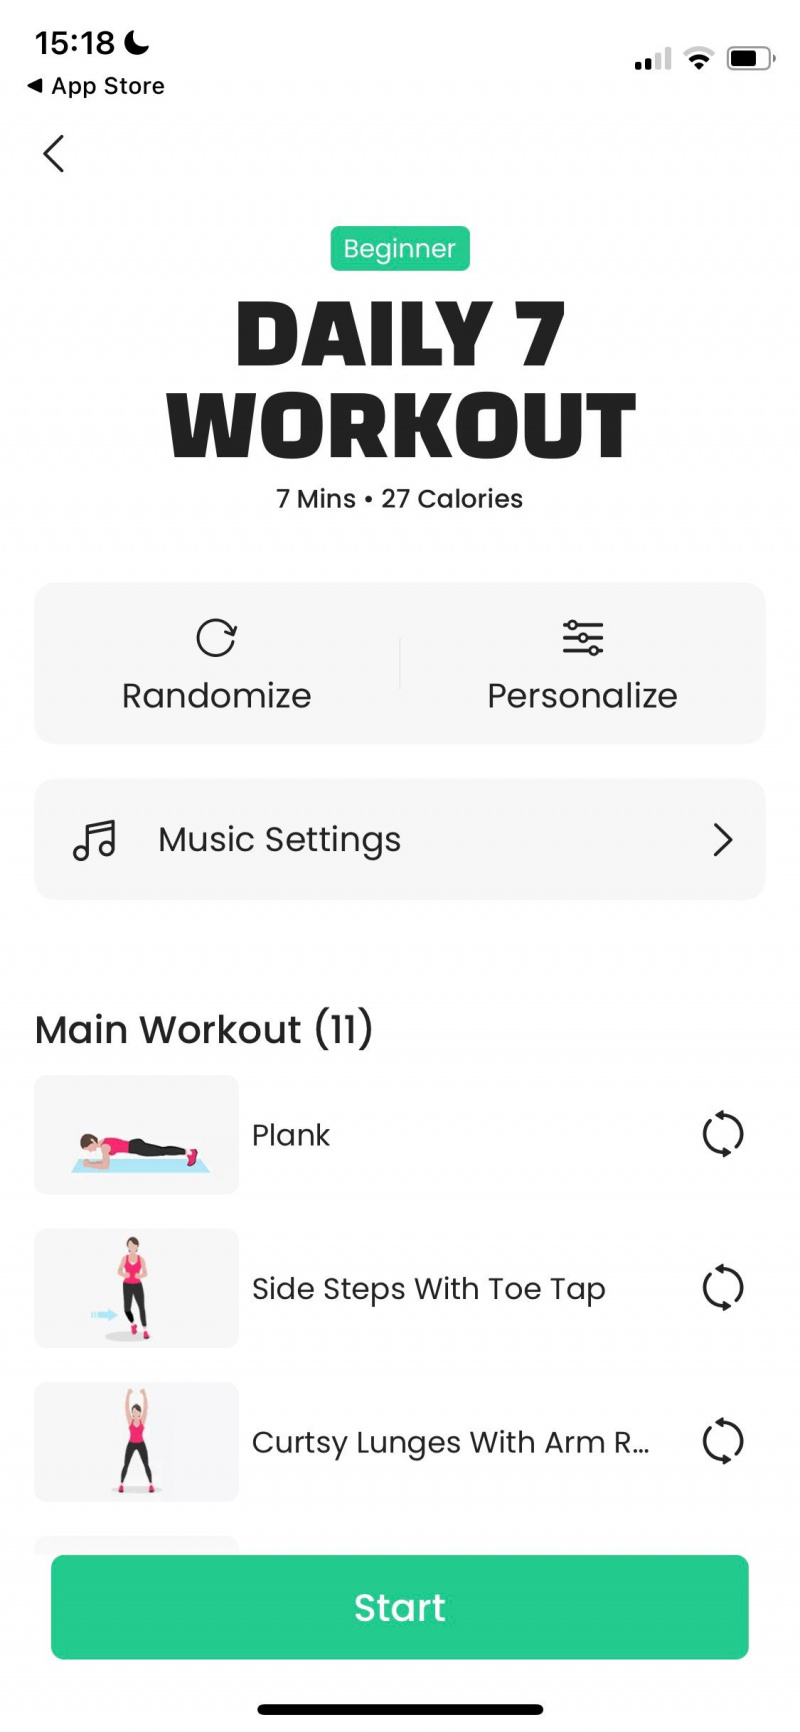   Skærmbillede af 7M Workout-app, der viser et dagligt træningsprogram